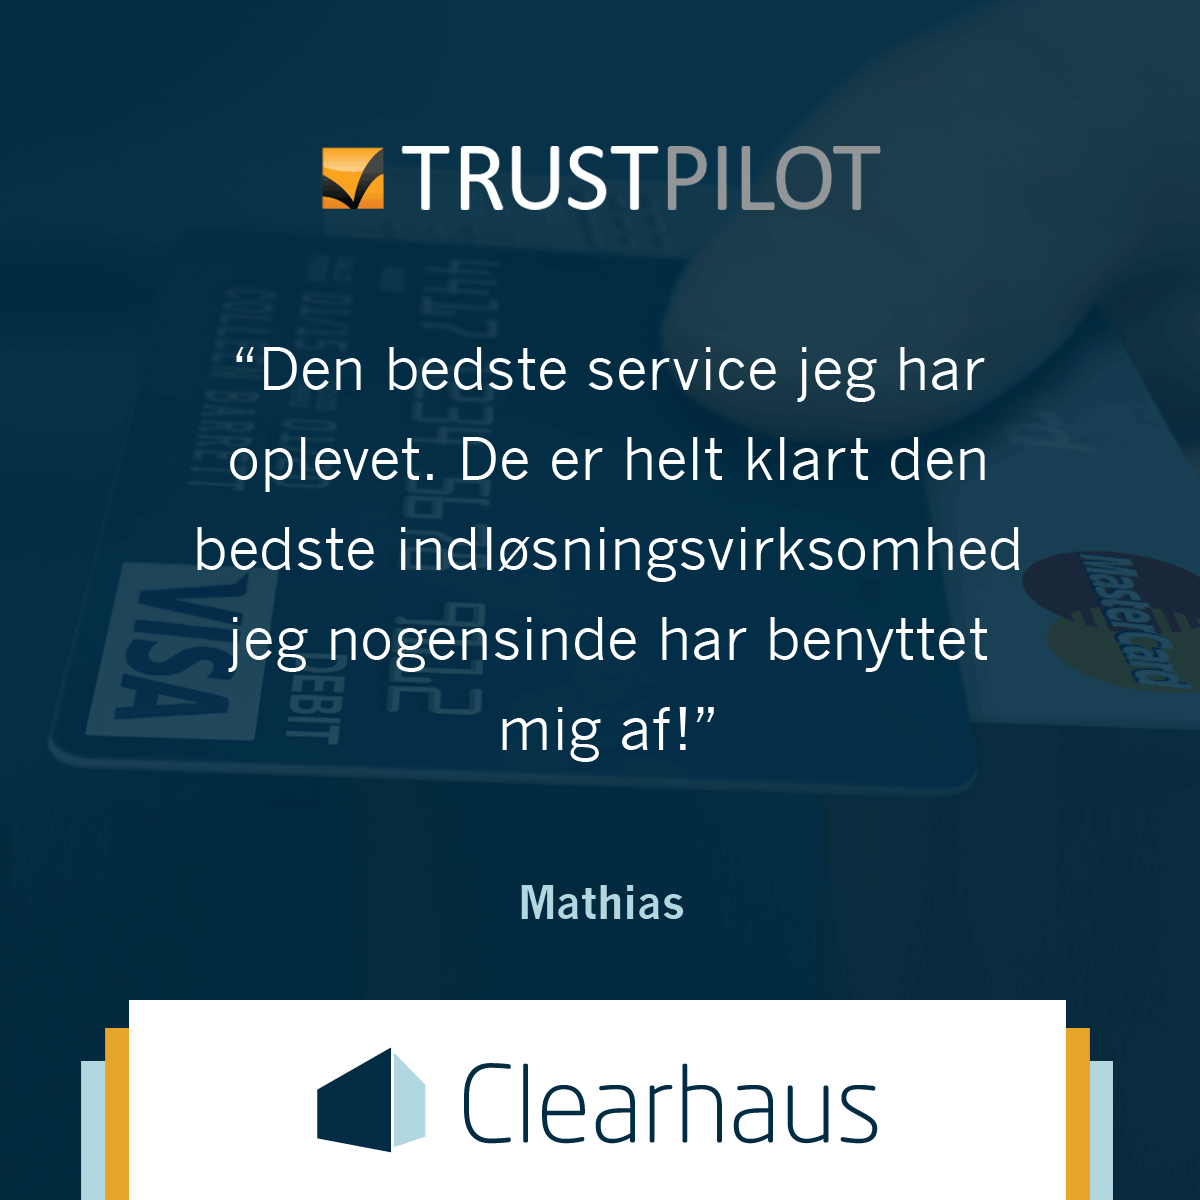 Clearhaus Trustpilot quote